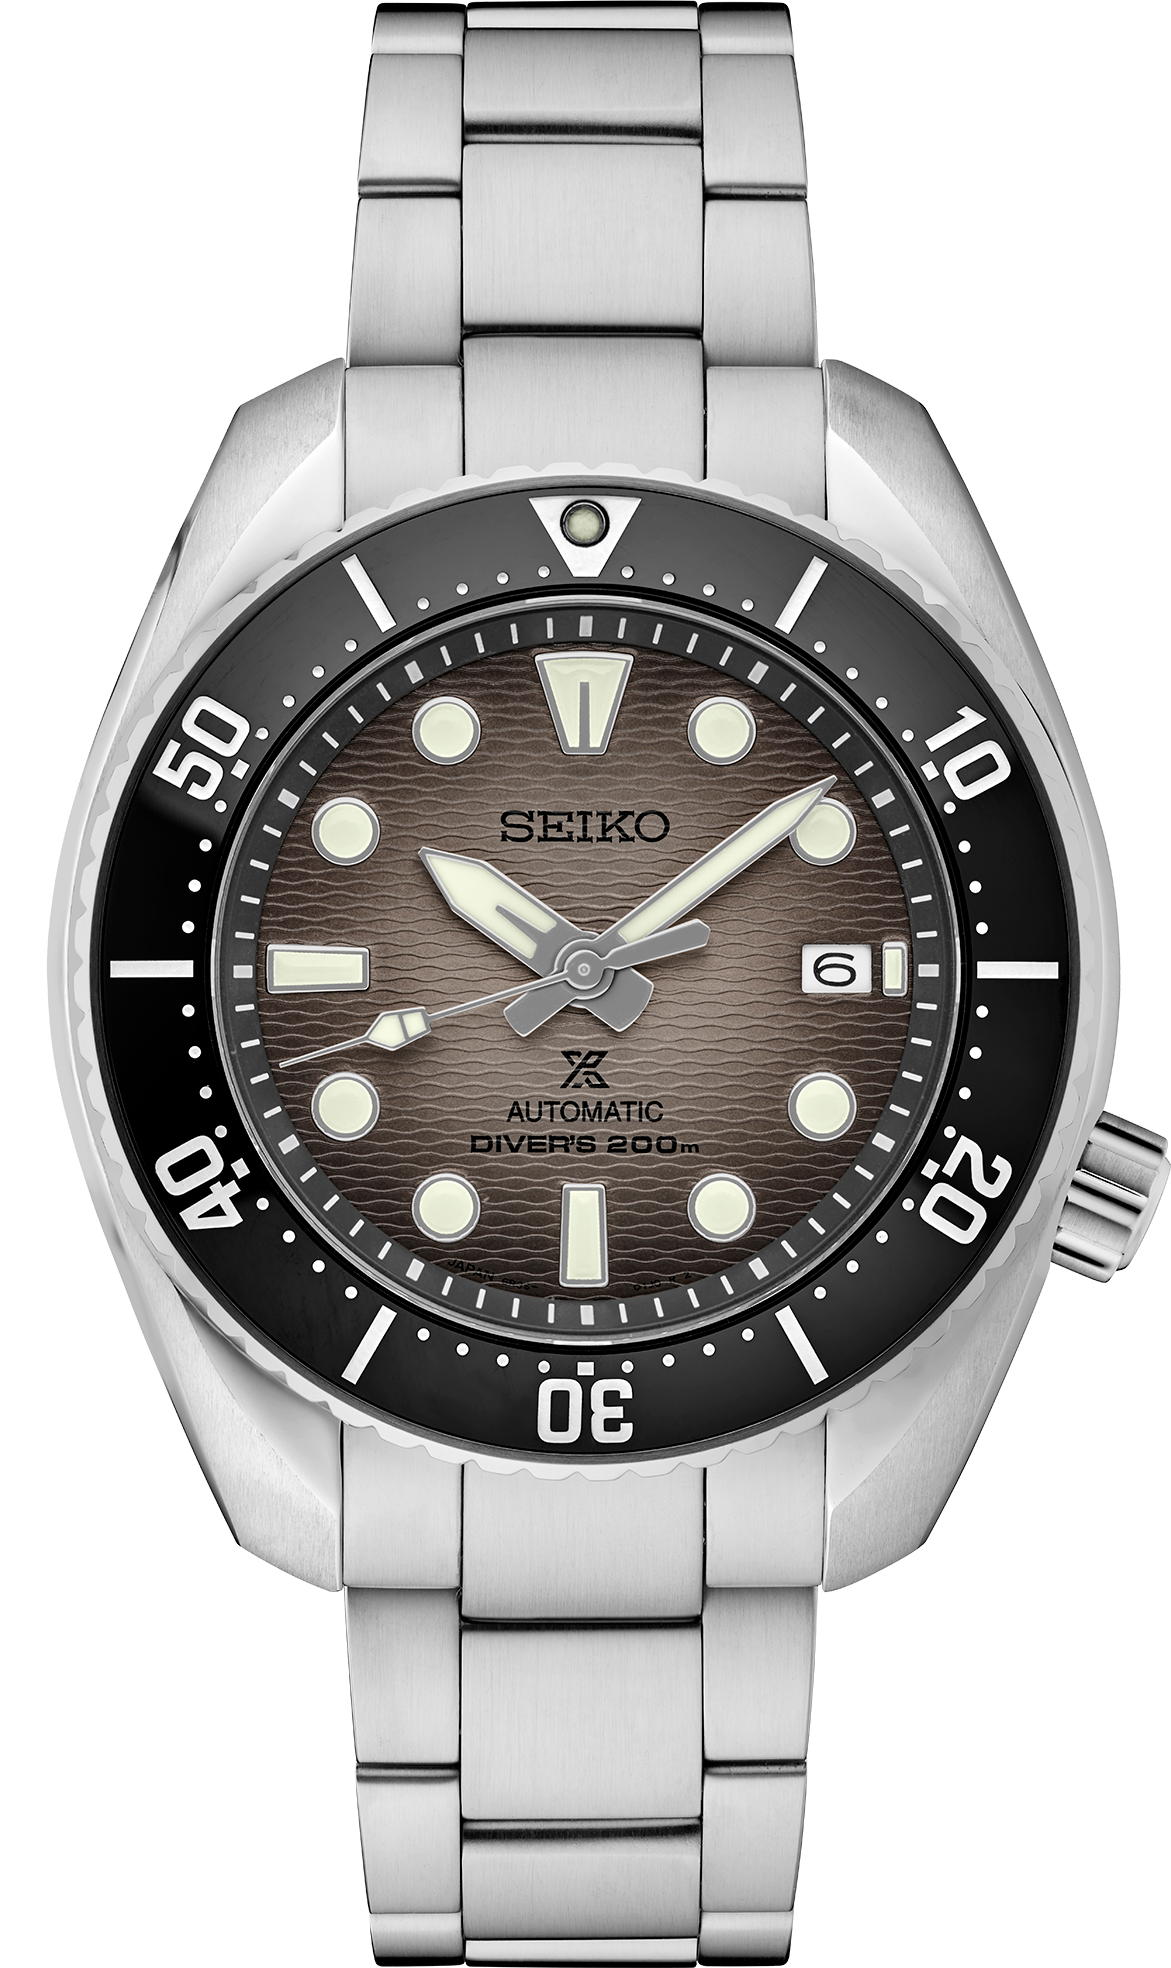 Seiko Prospex Diver's Watch